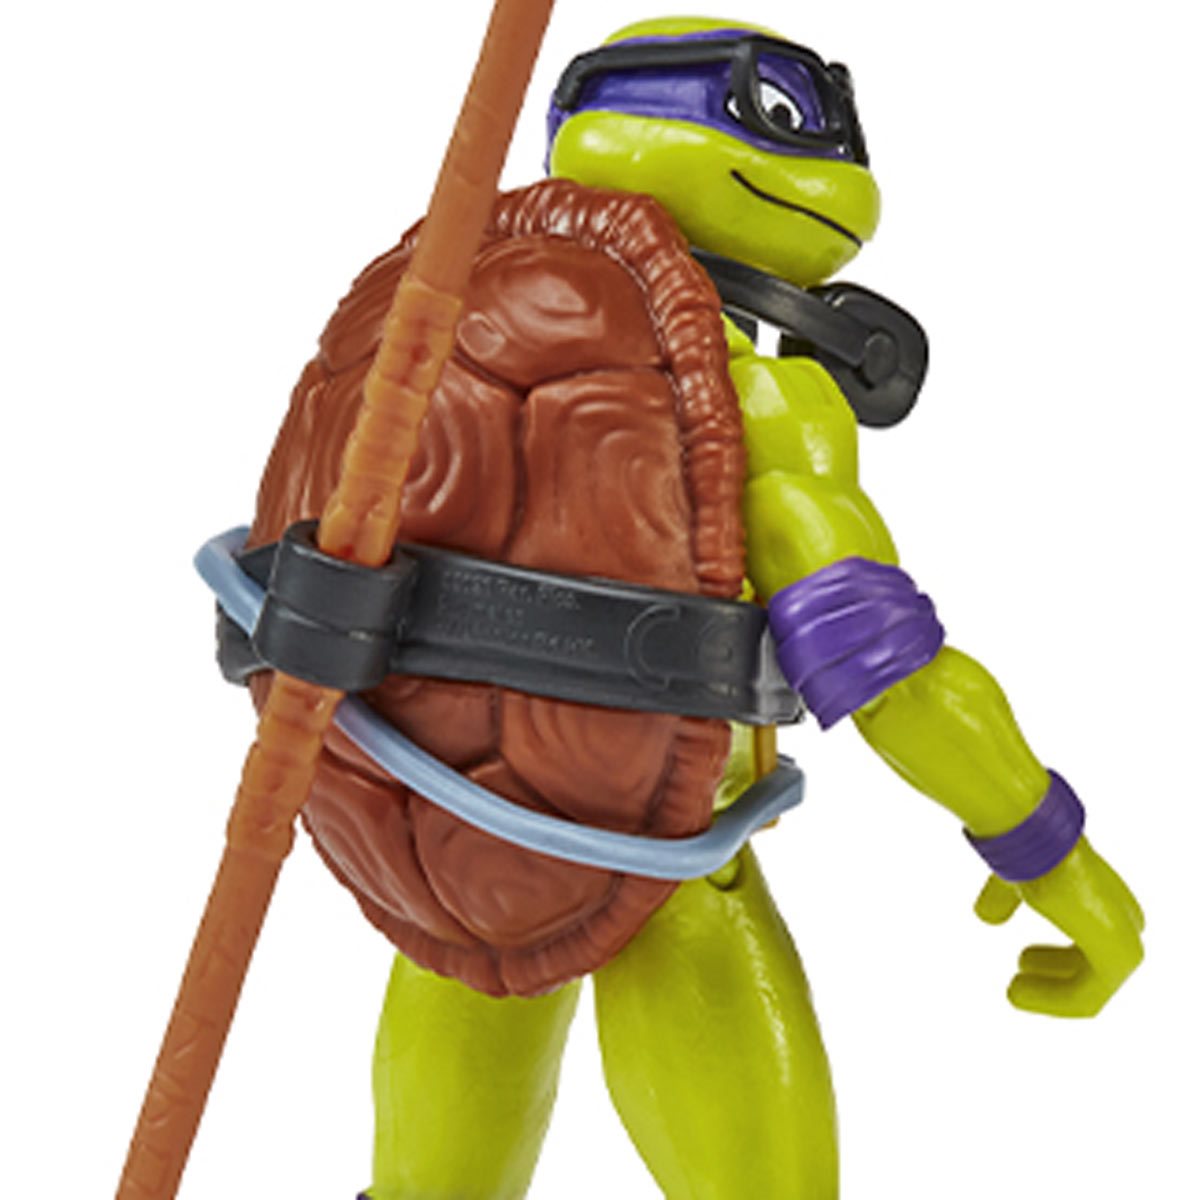 Teenage Mutant Ninja Turtles Donatello Mutant Mayhem Action Figure